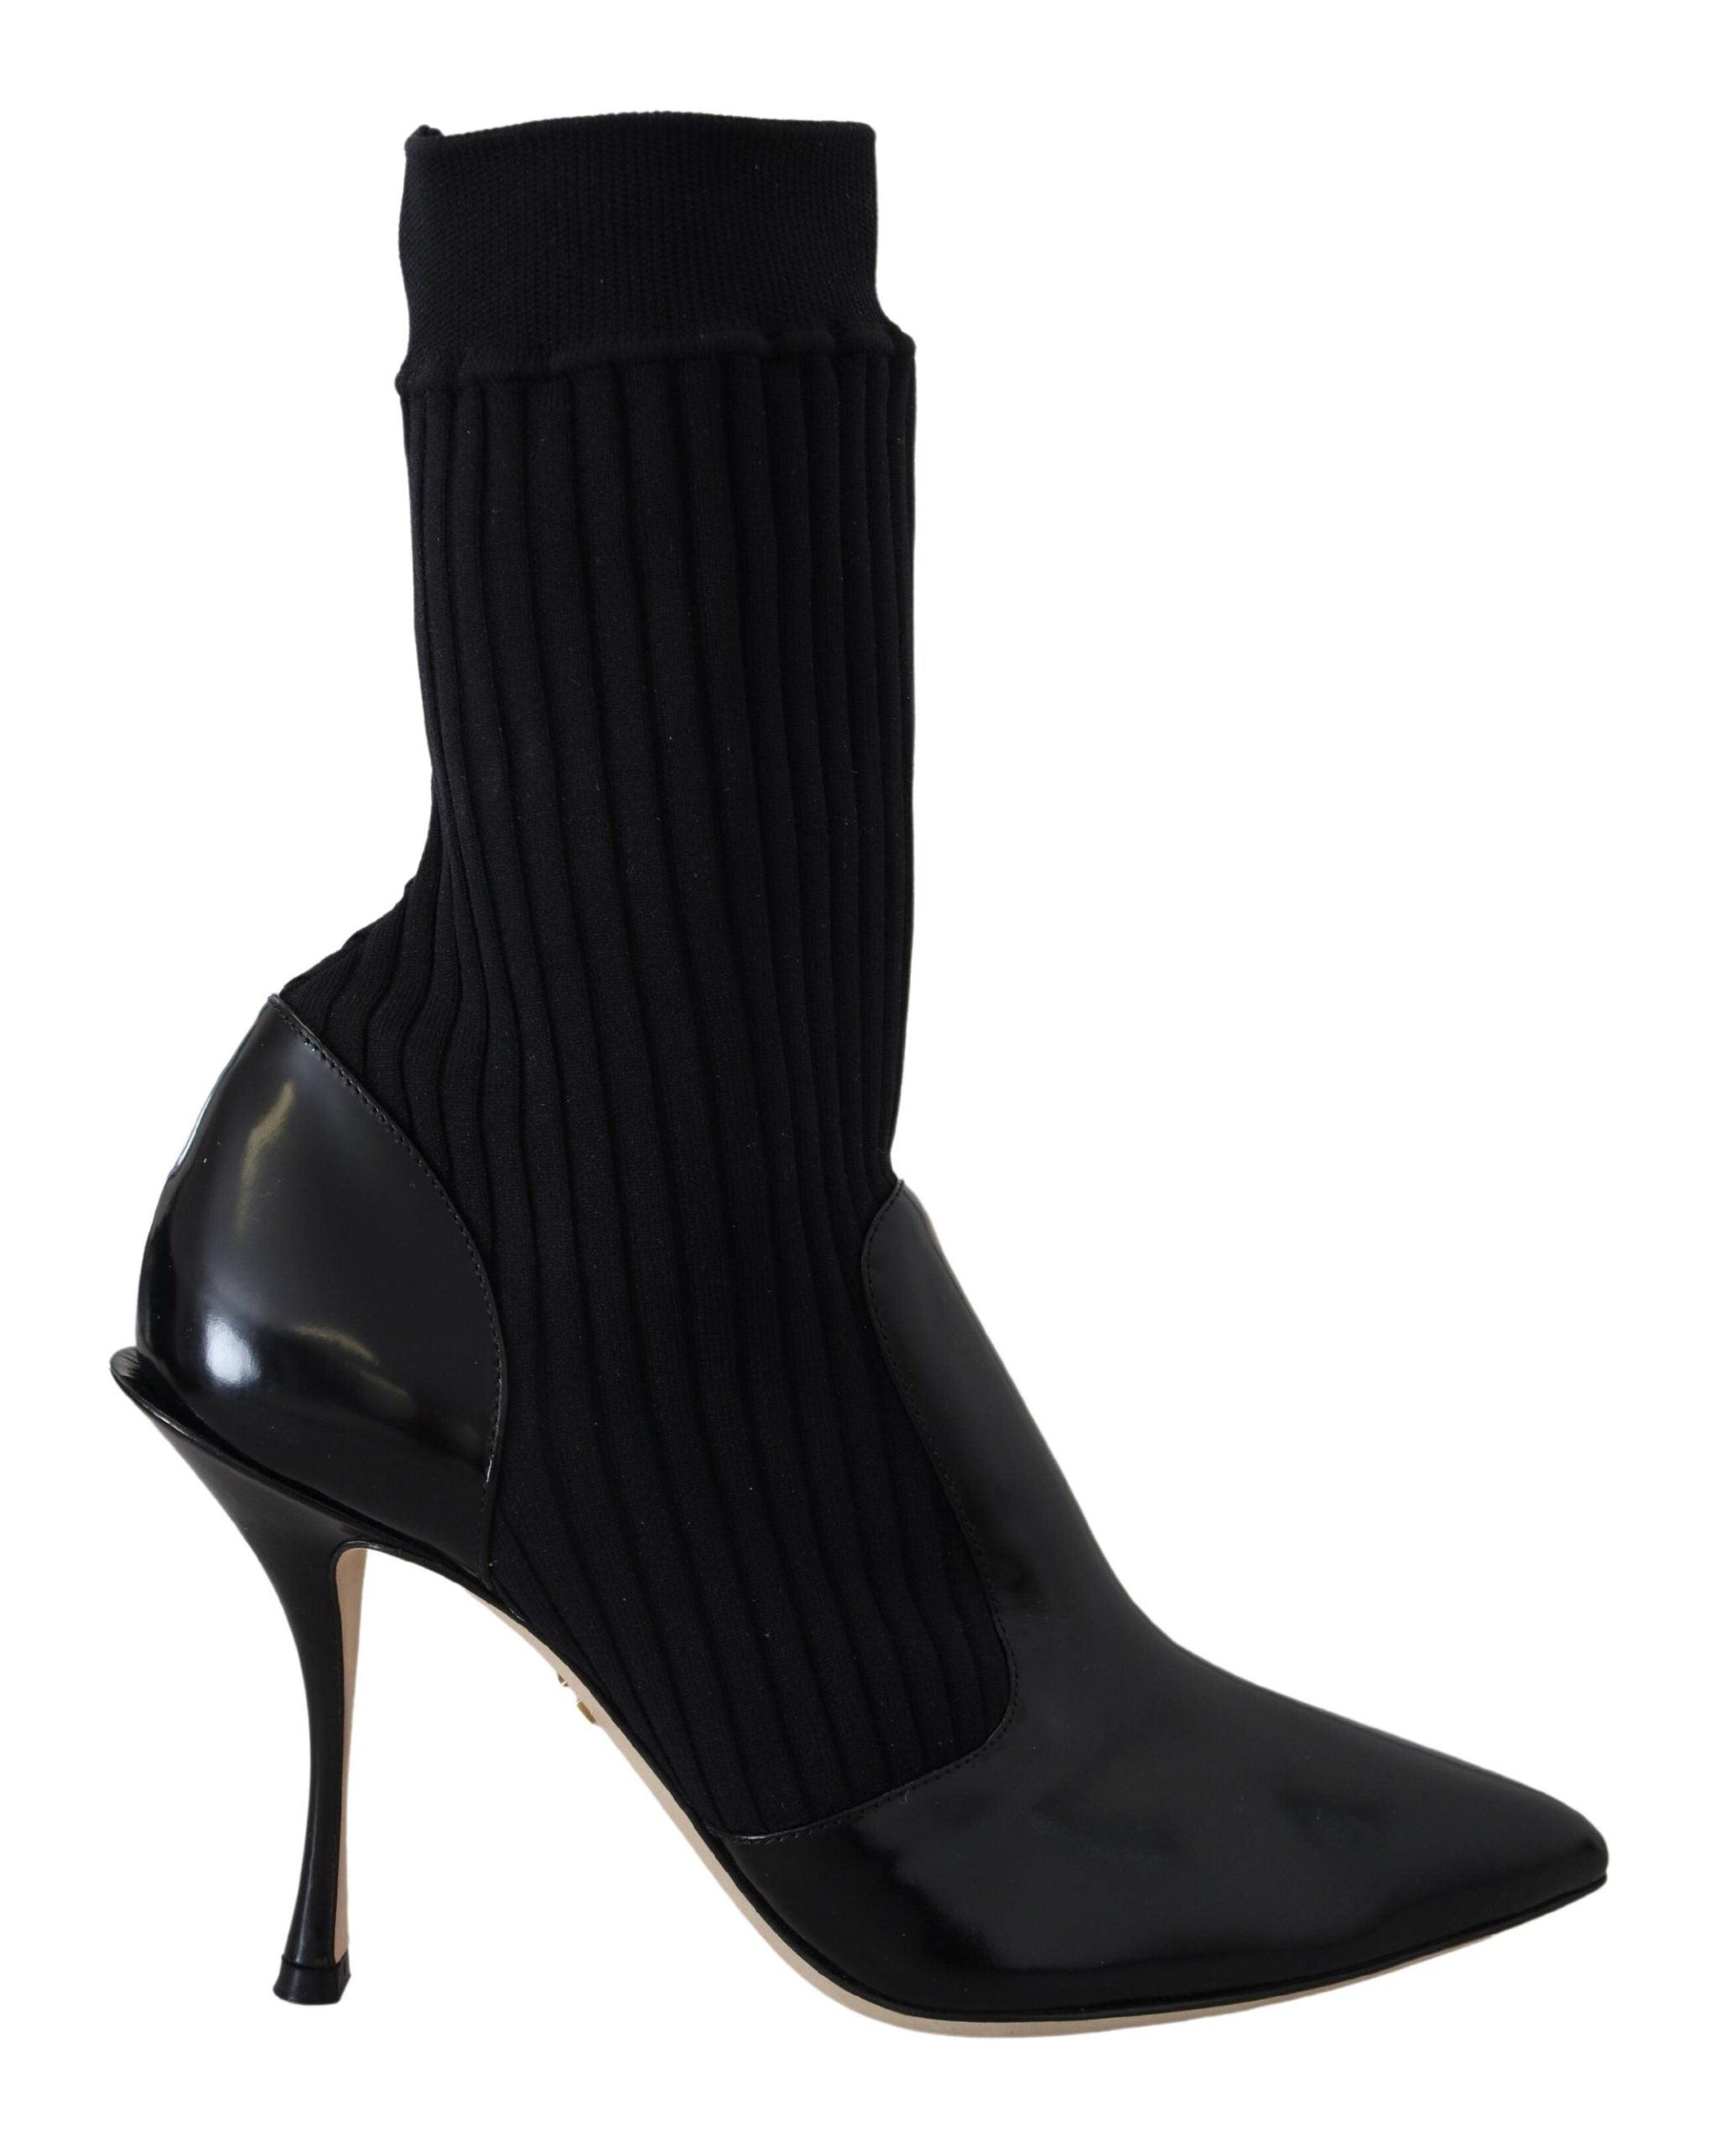 Dolce & Gabbana Socks Stiletto Heels Booties Shoes in Black | Lyst